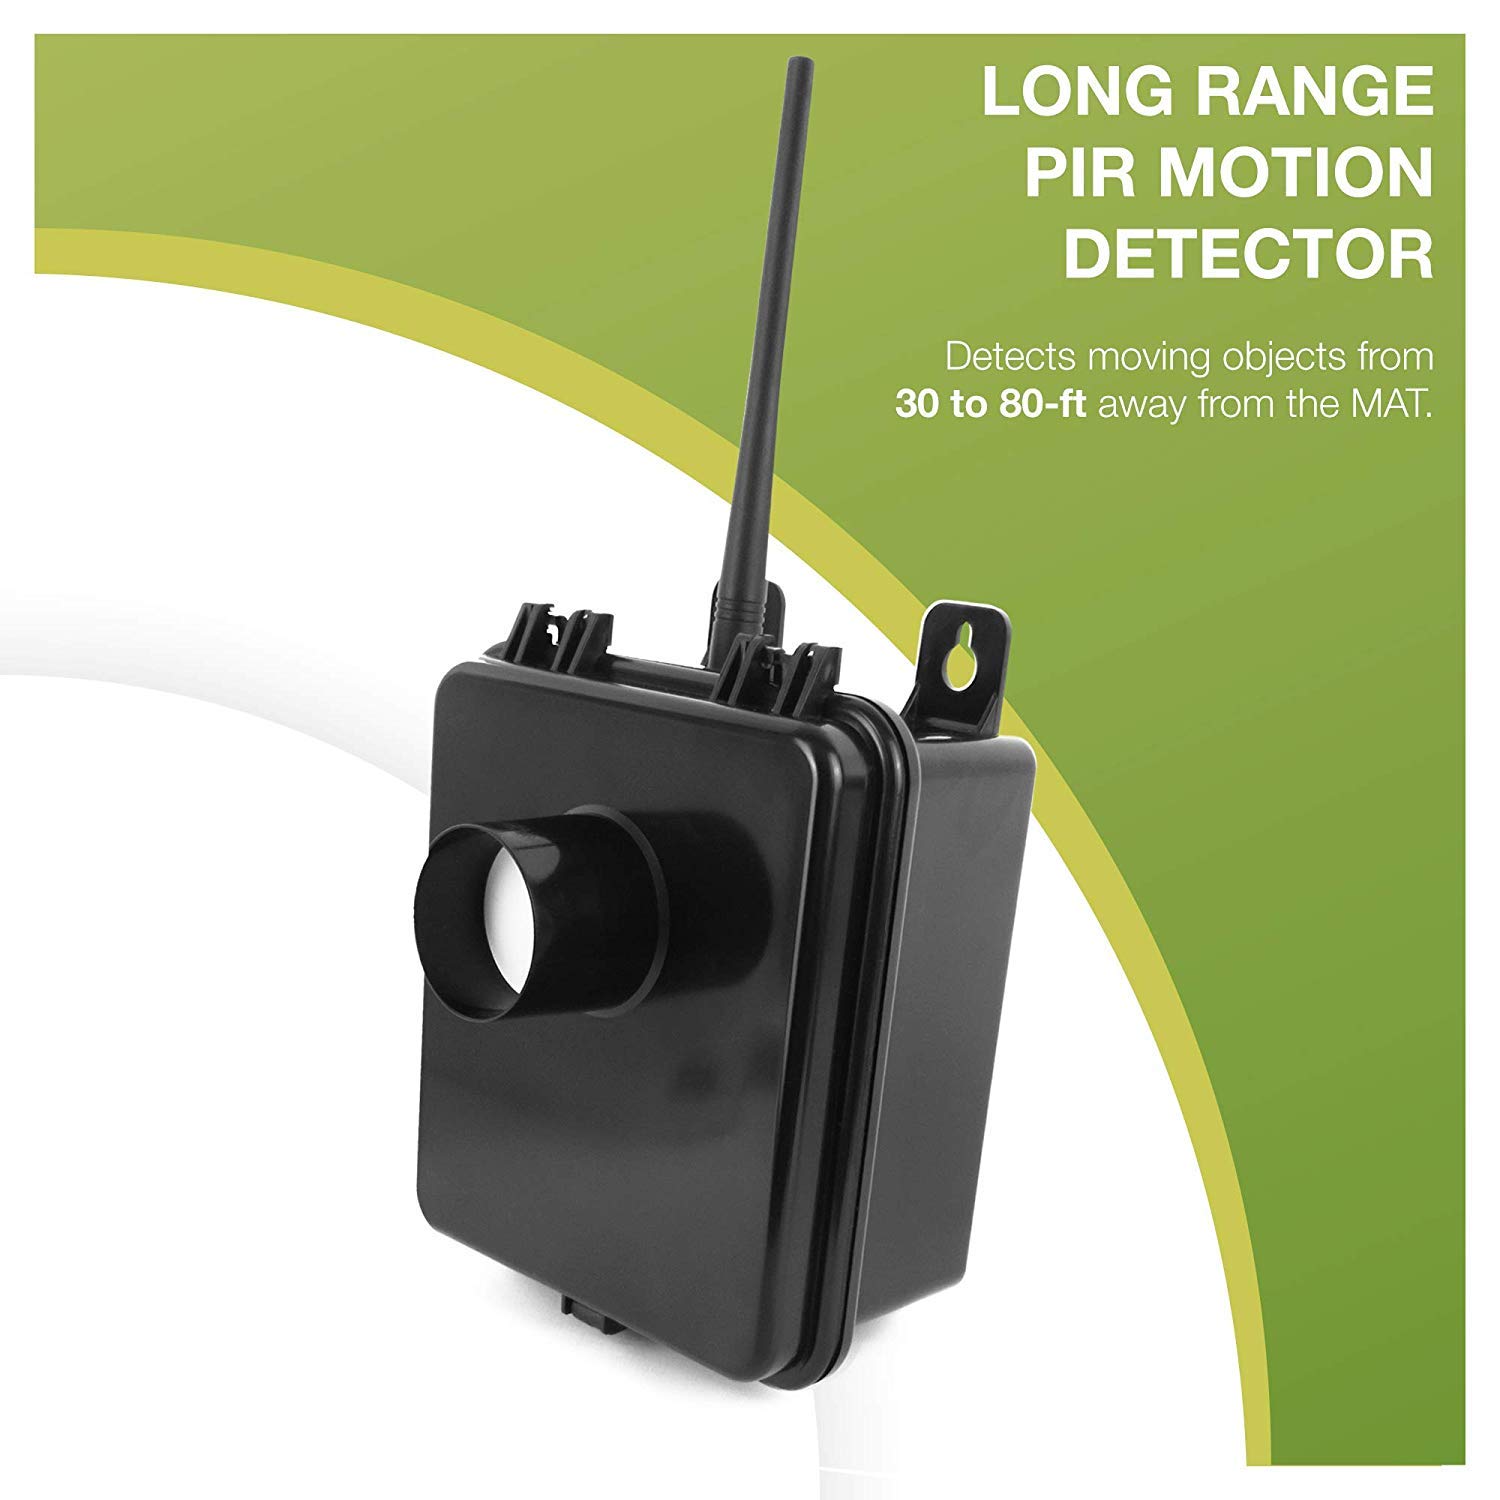 Dakota Alert MURSHTKIT Motion Sensor Kit MURS Alert Transmitter Box and Handheld  M538HT Wireless VHF Transceiver License Free Multi Use Radio Service 